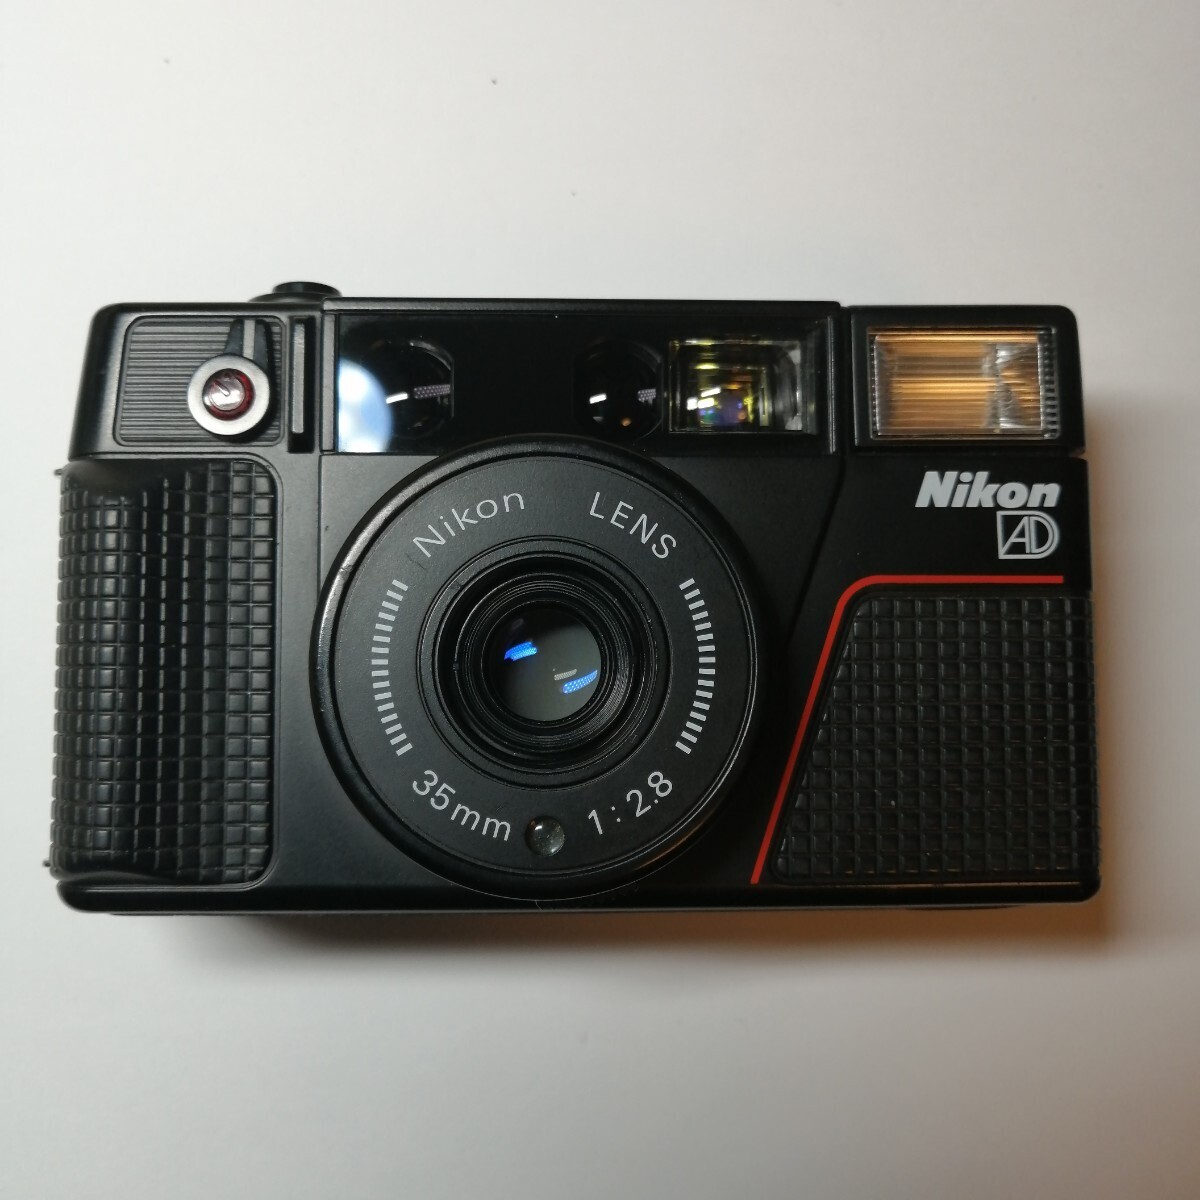  исправно работает прекрасный товар Nikon L35AD2pi kai chi#708 compact пленочный фотоаппарат 1 иен старт 